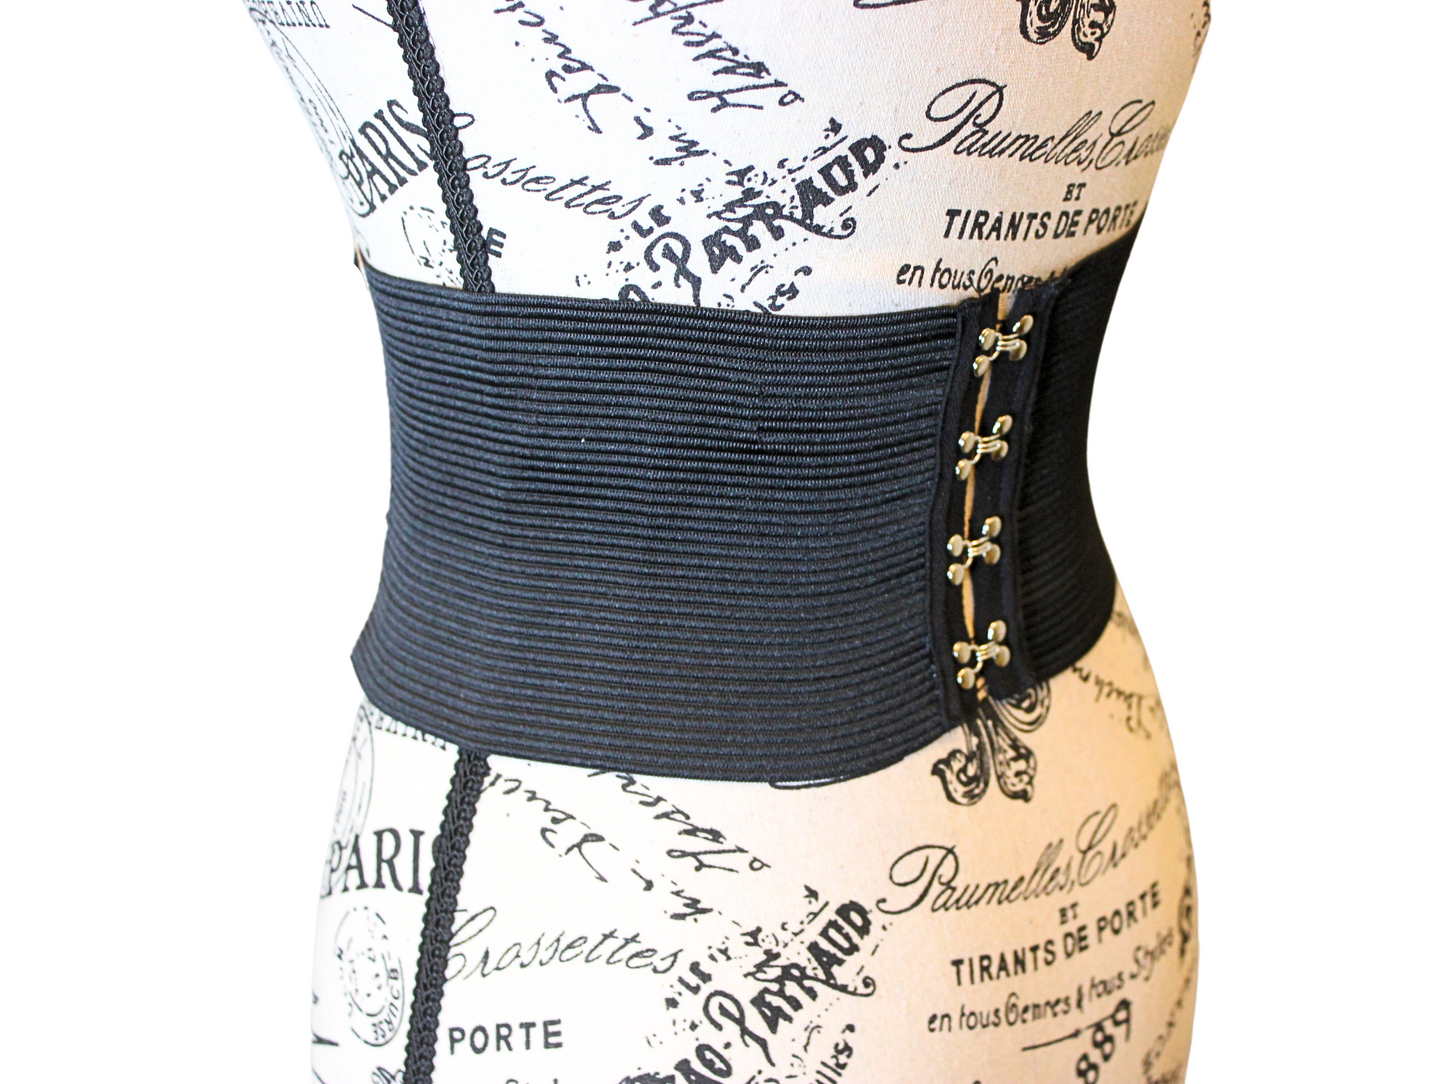 The VM Lace-Up Corset Waist Belt